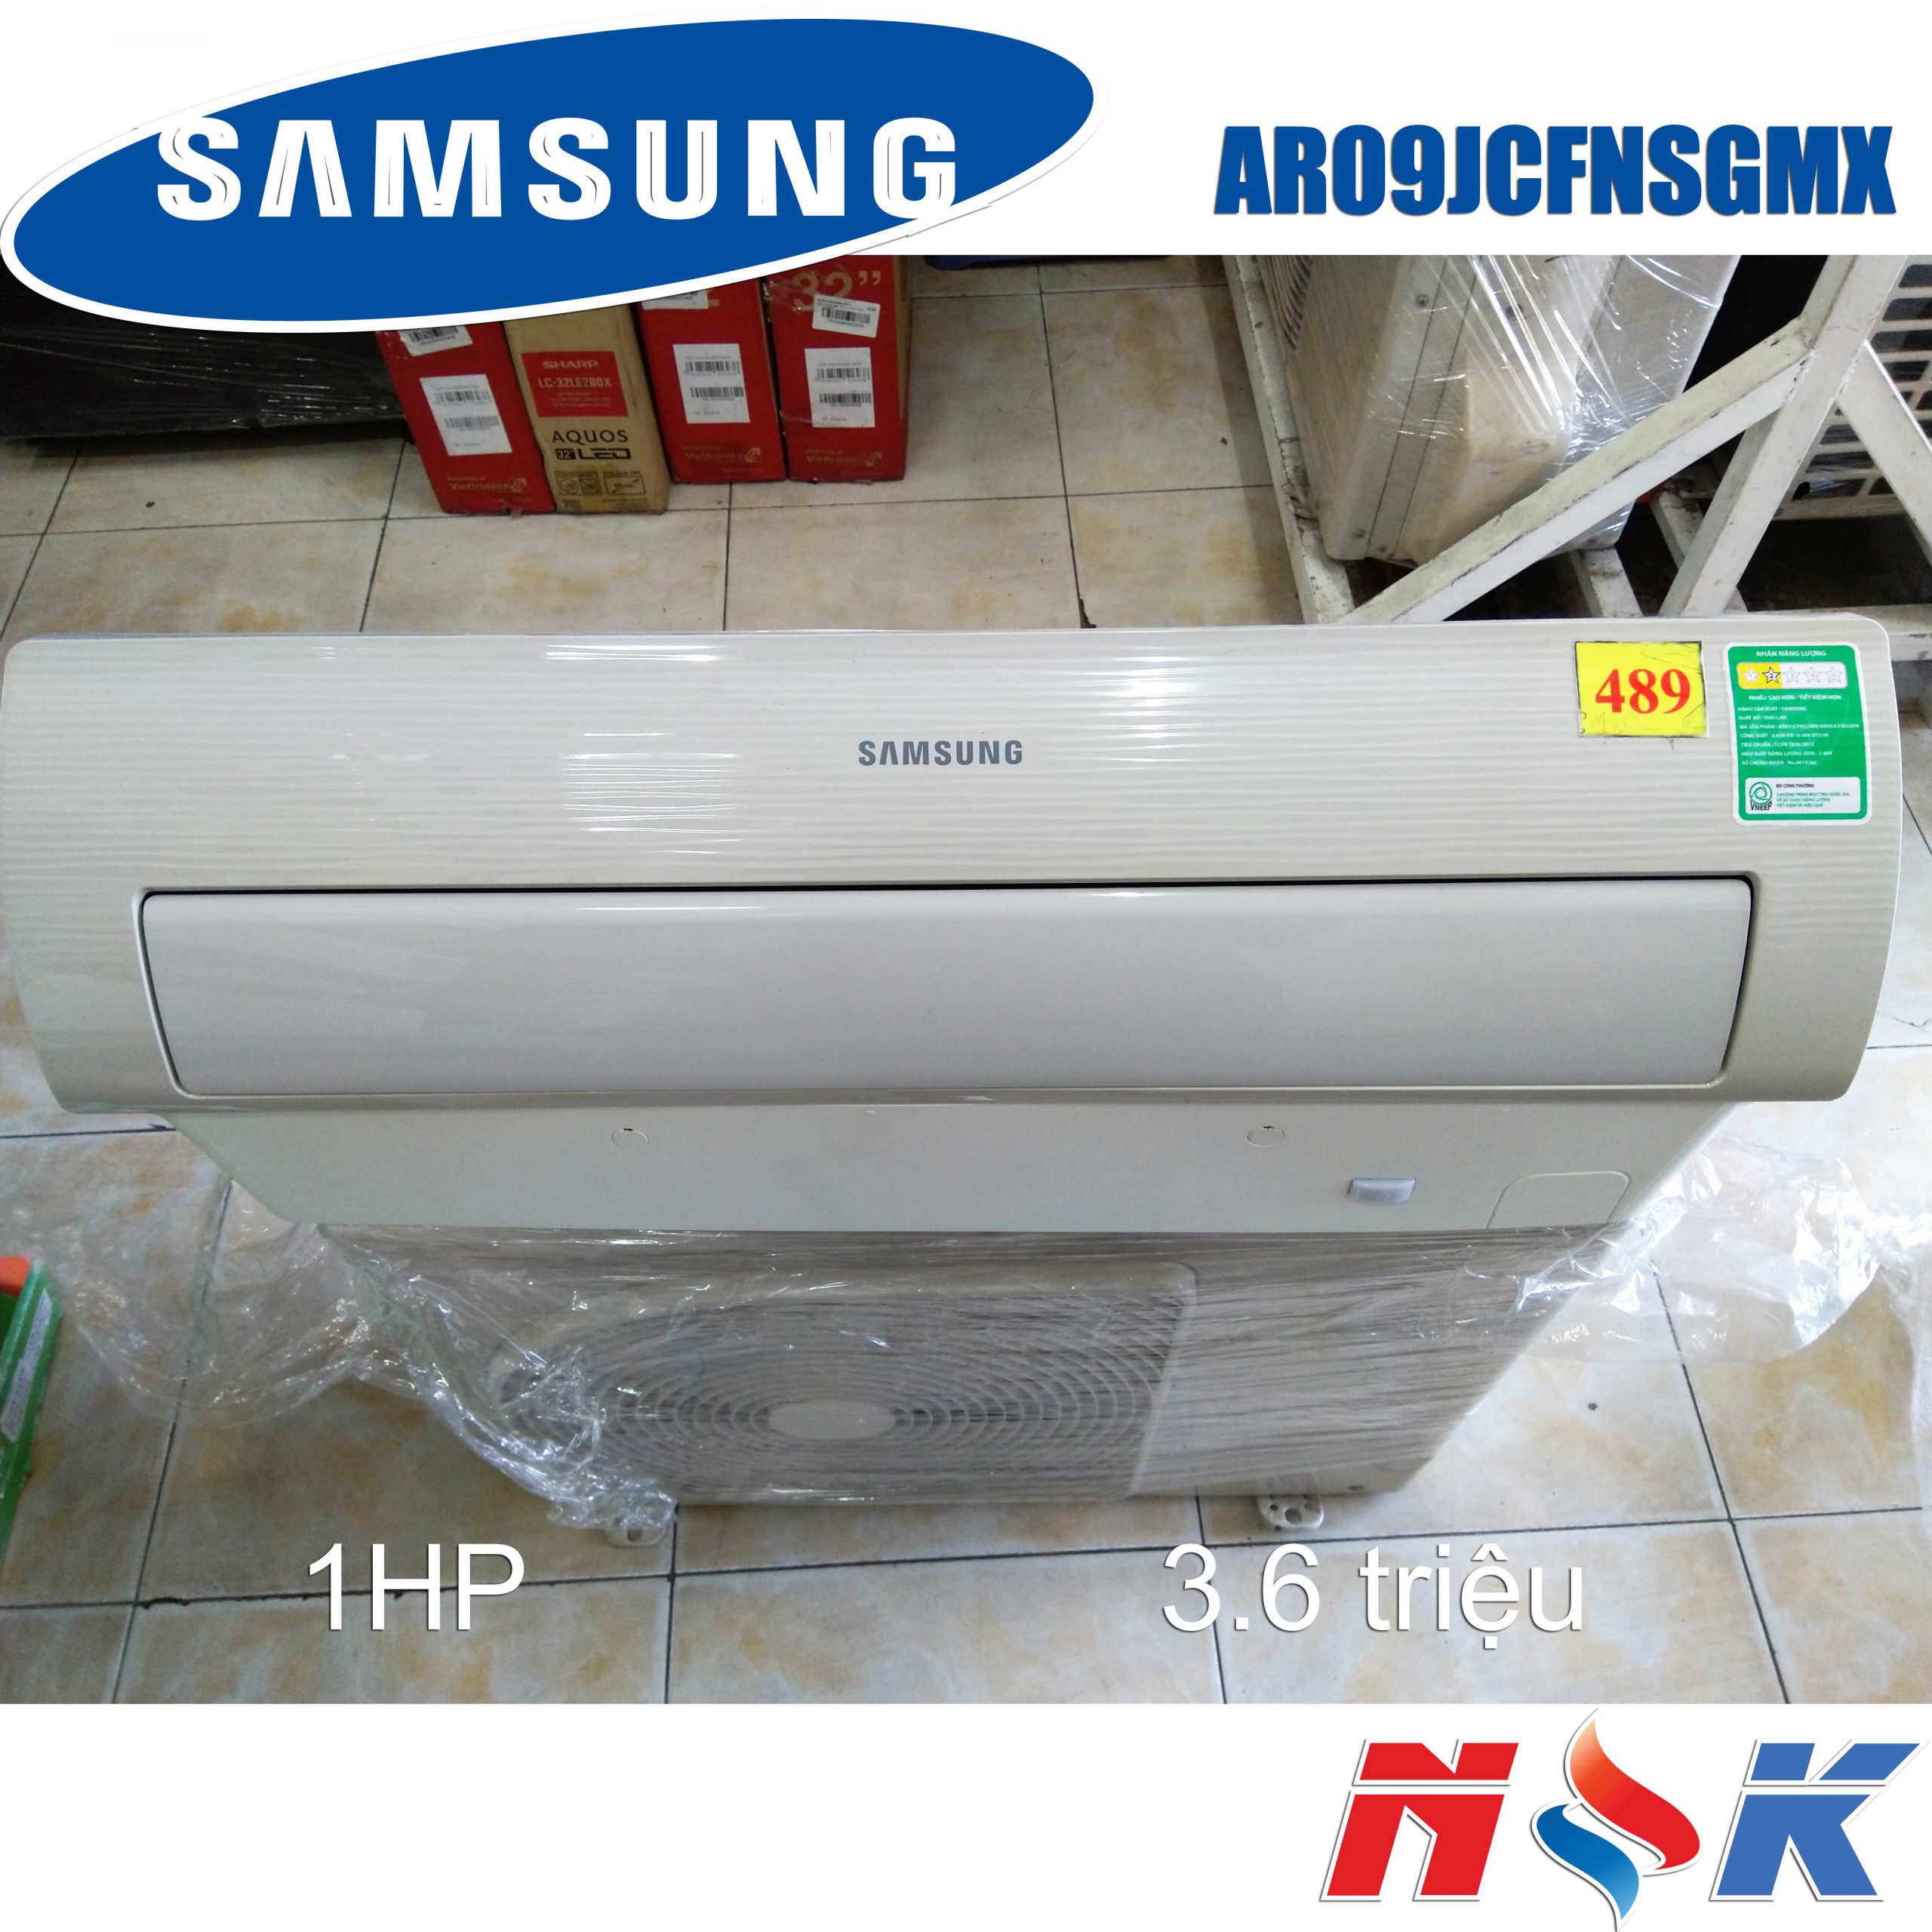 Máy lạnh Samsung AR09JCFNSGMN 1HP